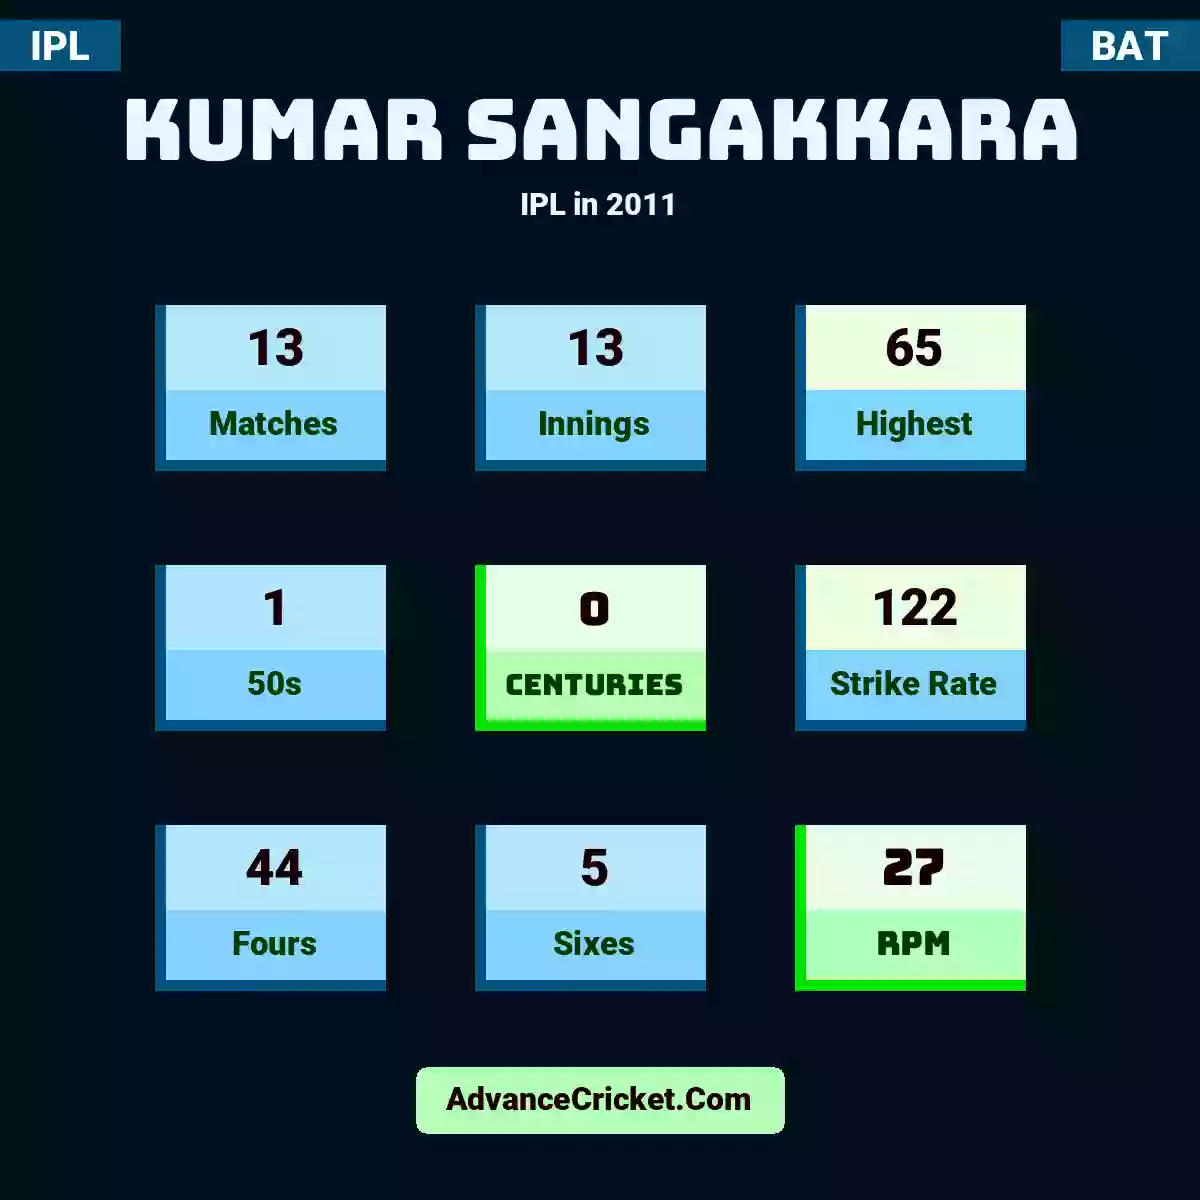 Kumar Sangakkara IPL  in 2011, Kumar Sangakkara played 13 matches, scored 65 runs as highest, 1 half-centuries, and 0 centuries, with a strike rate of 122. K.Sangakkara hit 44 fours and 5 sixes, with an RPM of 27.